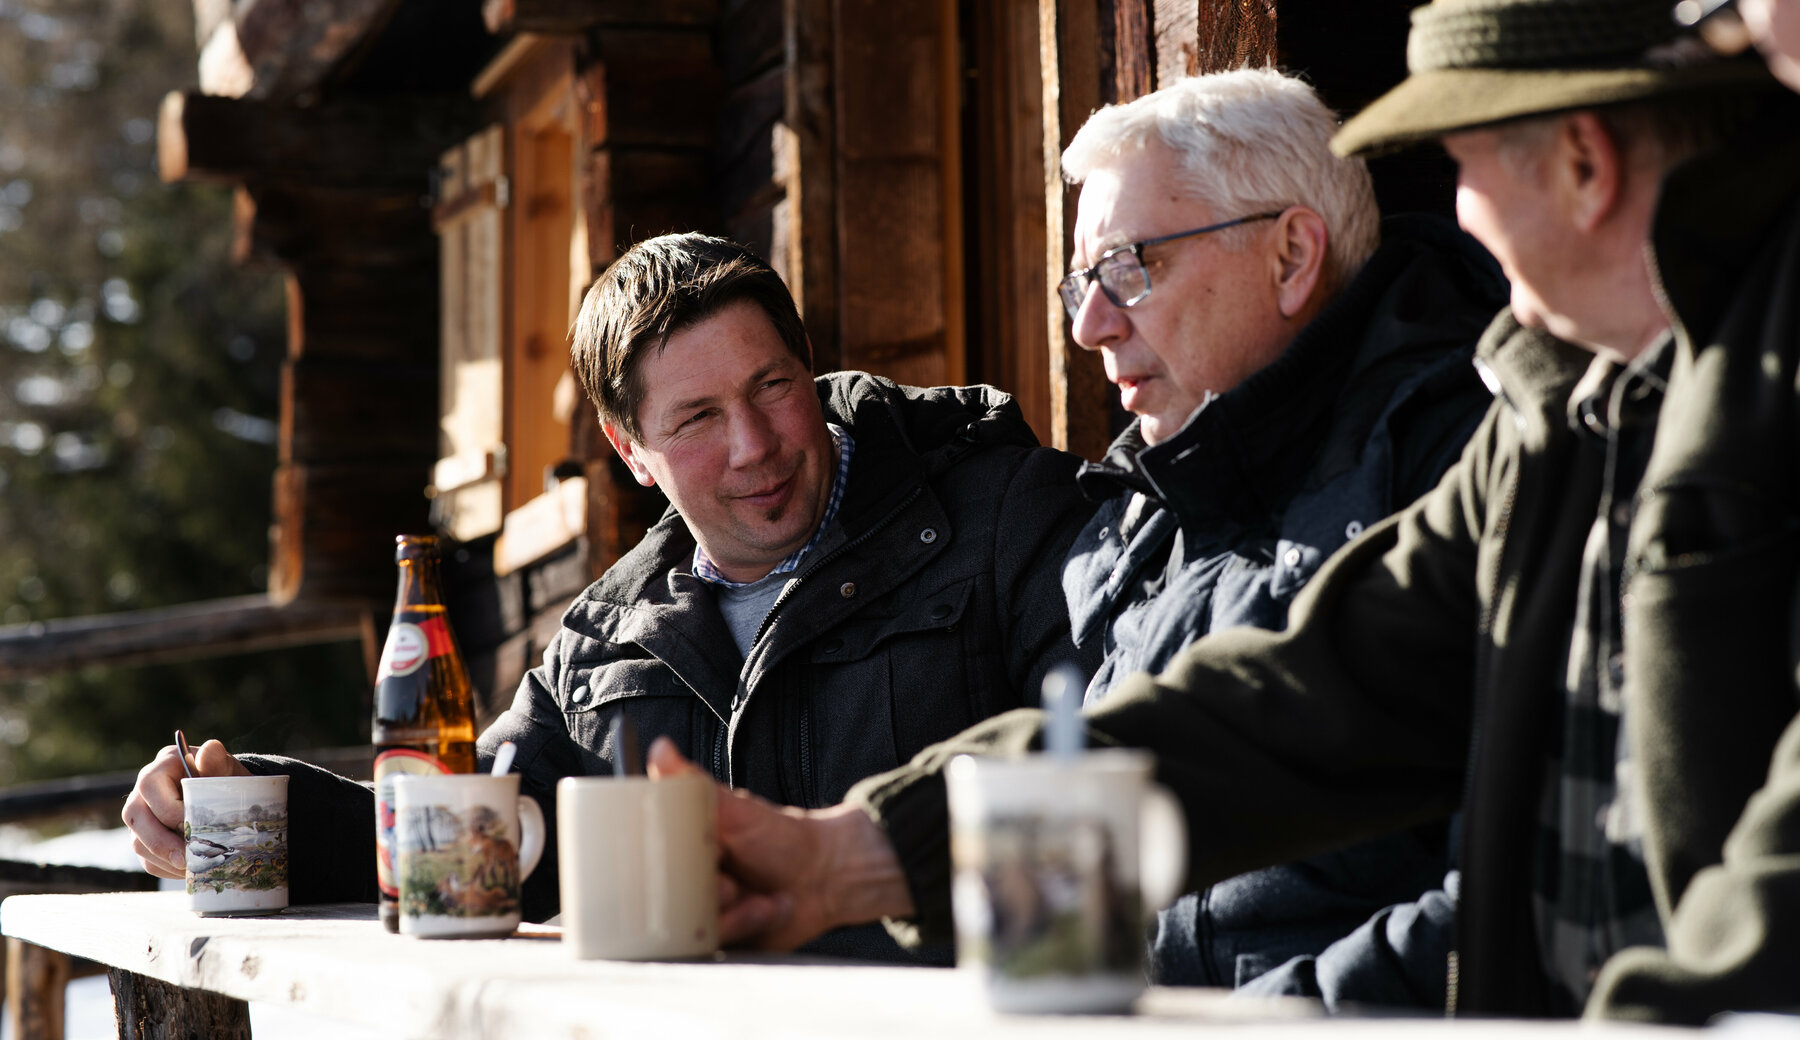 4 Herren sitzen auf einer verschneiten Bank vor einer traditionellen Holzhütte und unterhalten sich.